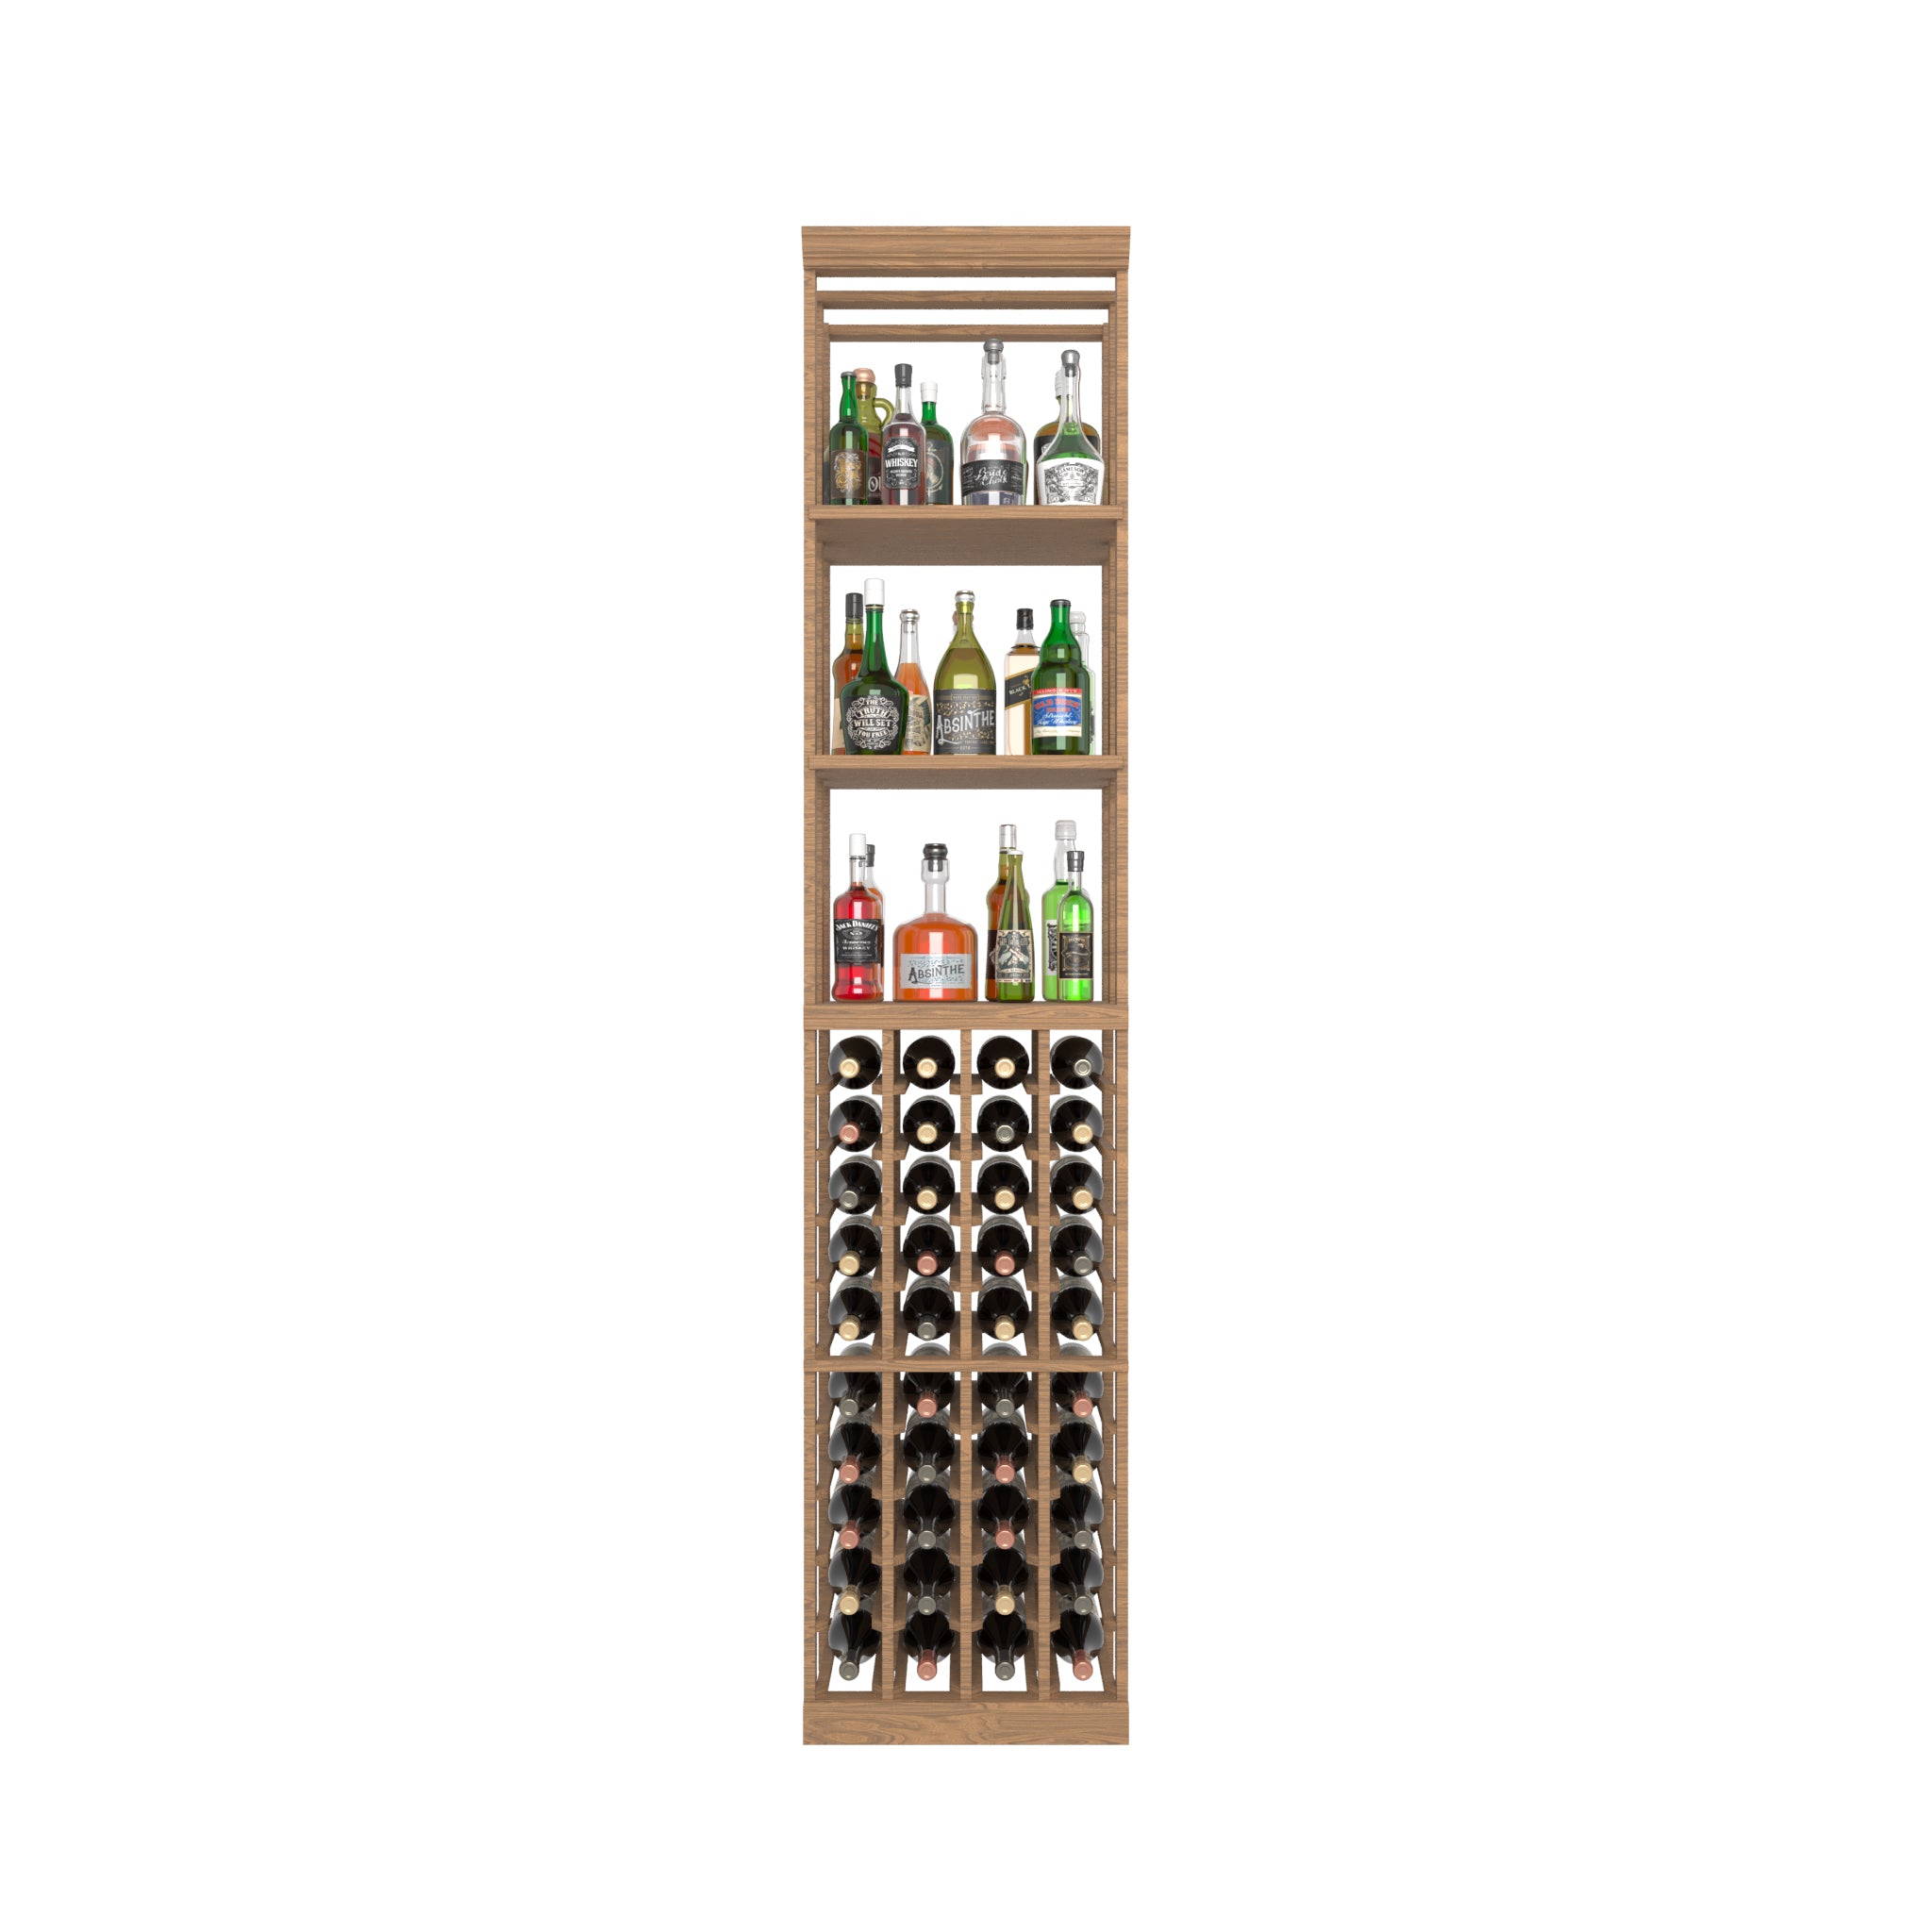 04 Column Rack with Liquor Display Shelves - 750ml Bottles